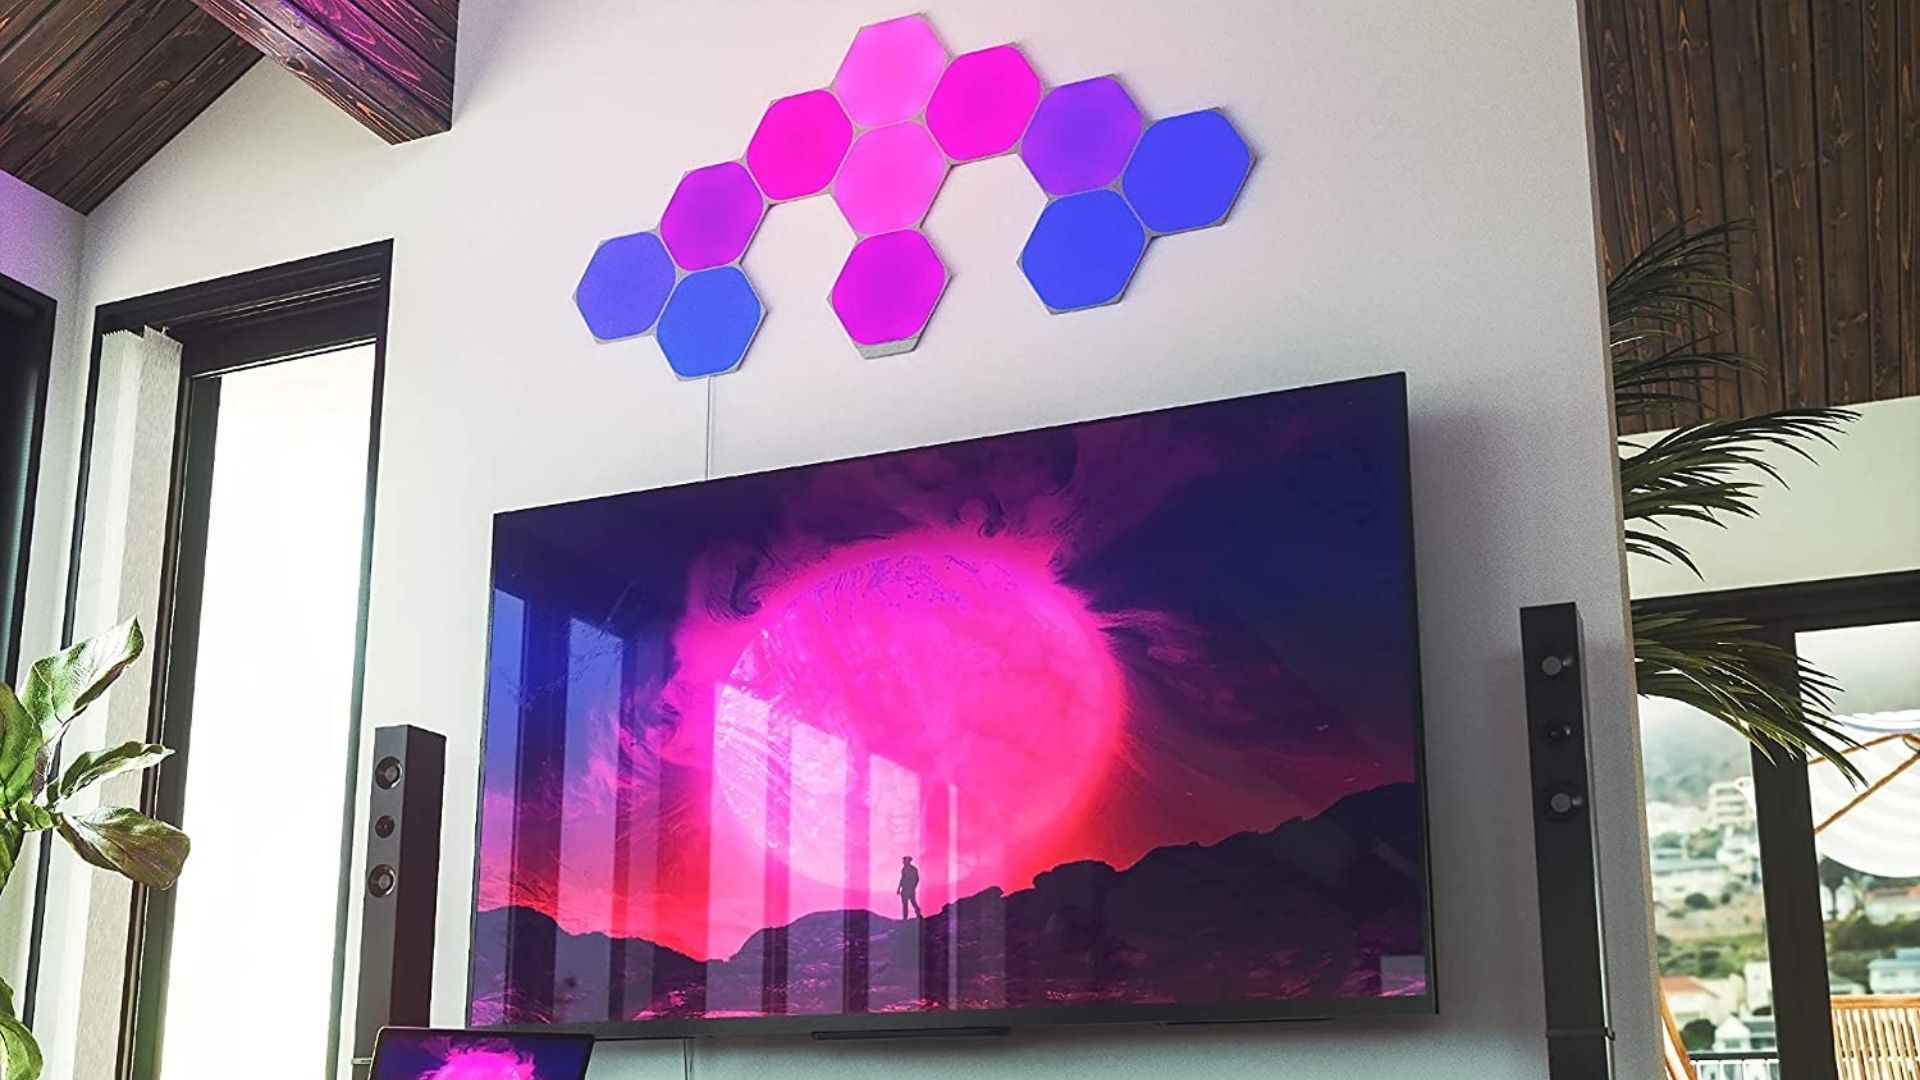 Nanoleaf Shapes Hexagons smart lighting above a TV